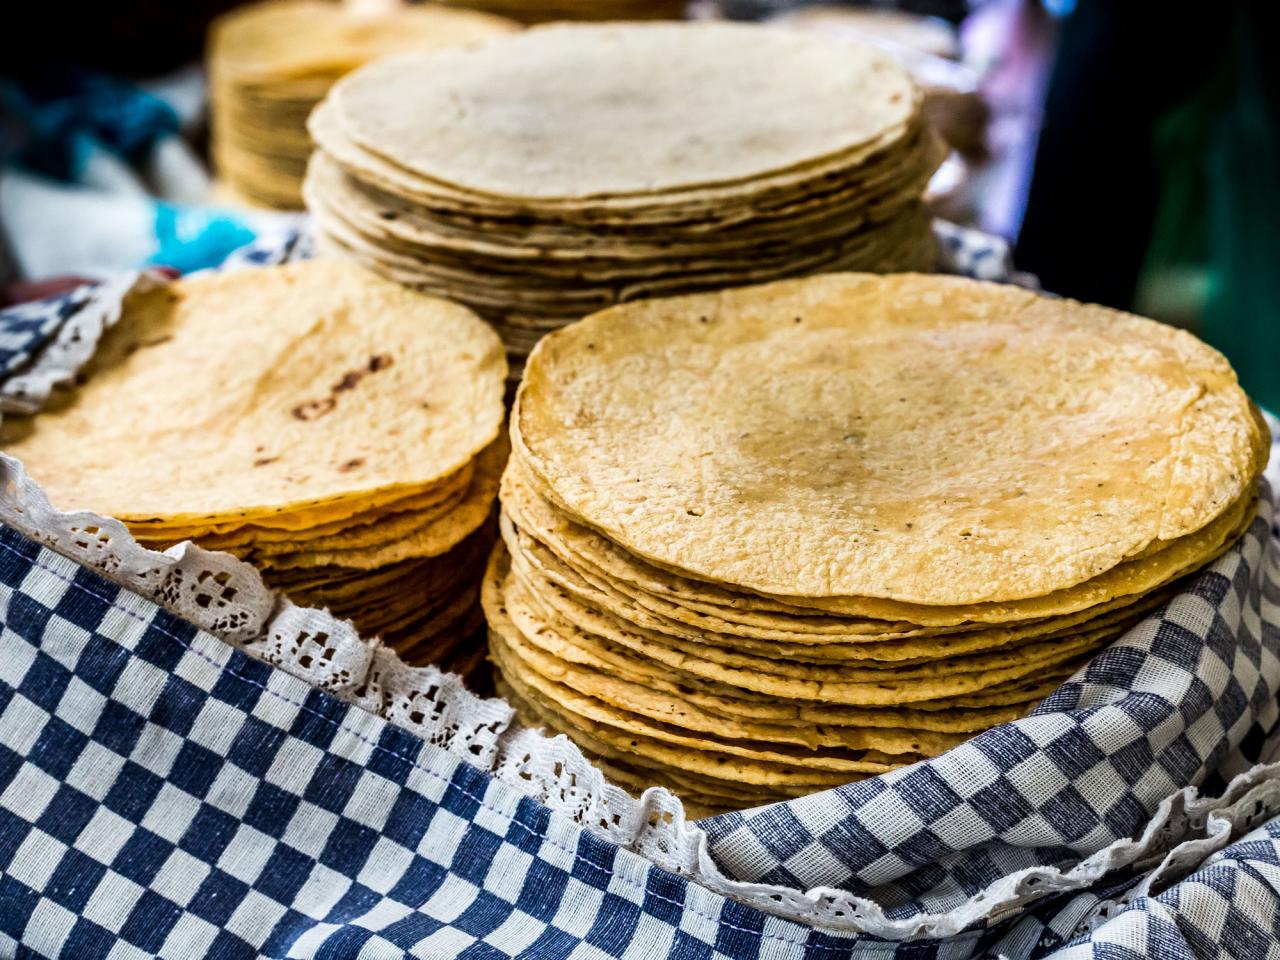 https://food.fnr.sndimg.com/content/dam/images/food/fullset/2022/05/04/fn_homemade-tortillas-getty_s4x3.jpg.rend.hgtvcom.1280.960.suffix/1651676680590.jpeg